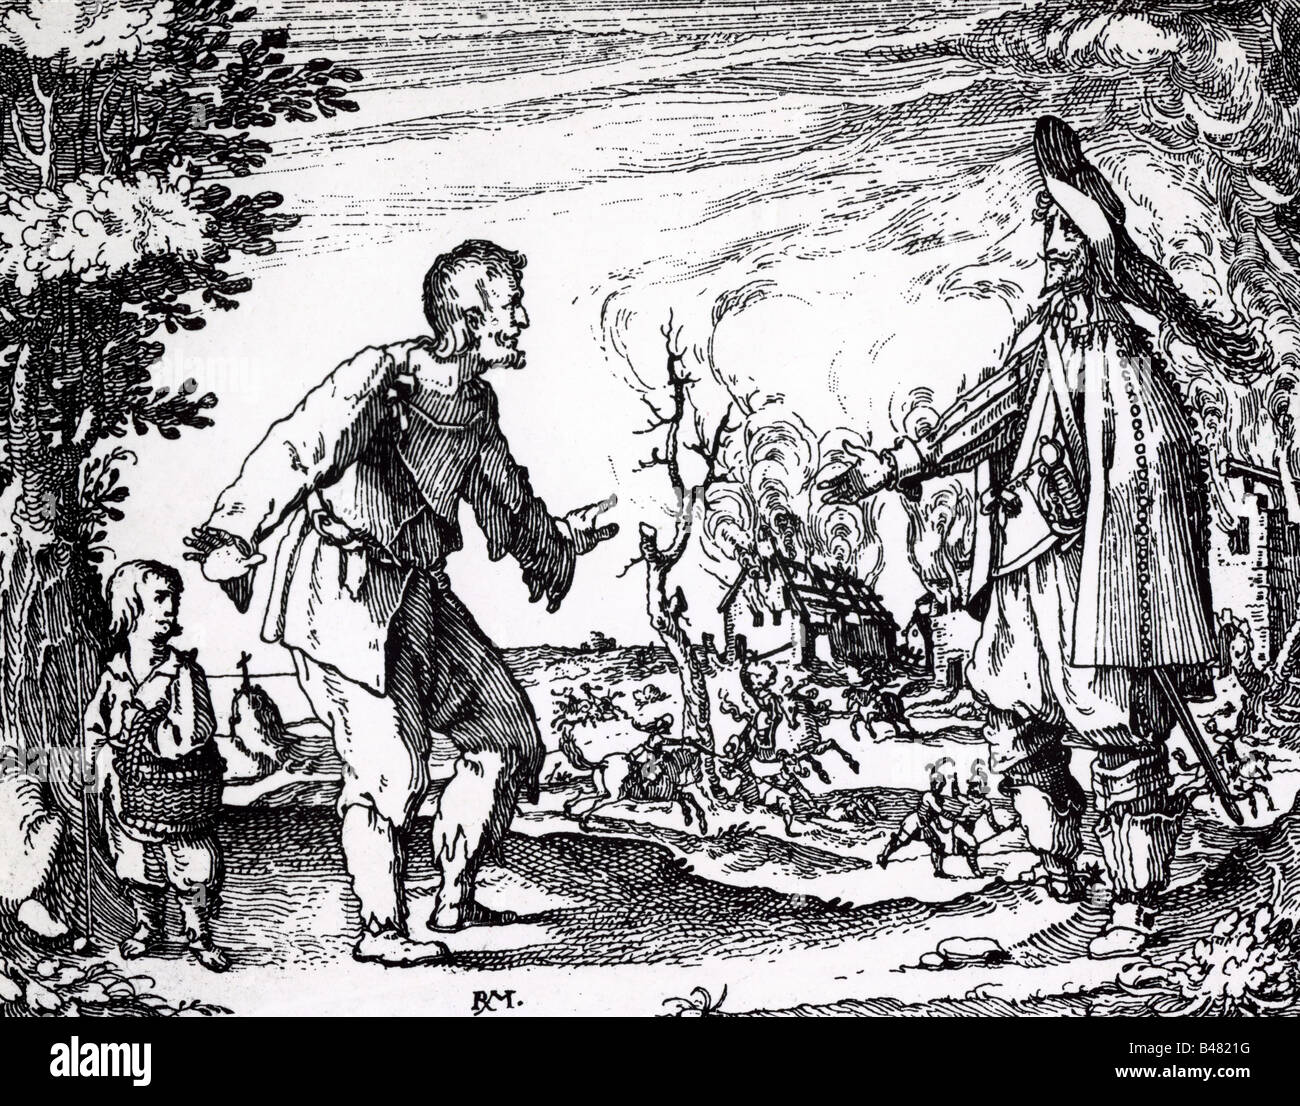 Eventi, Guerra Dei Trent'Anni 1618 - 1648, miseria/avversità, saccheggi soldati, incisione di Rudolph Meyer, 1630/1635, Foto Stock